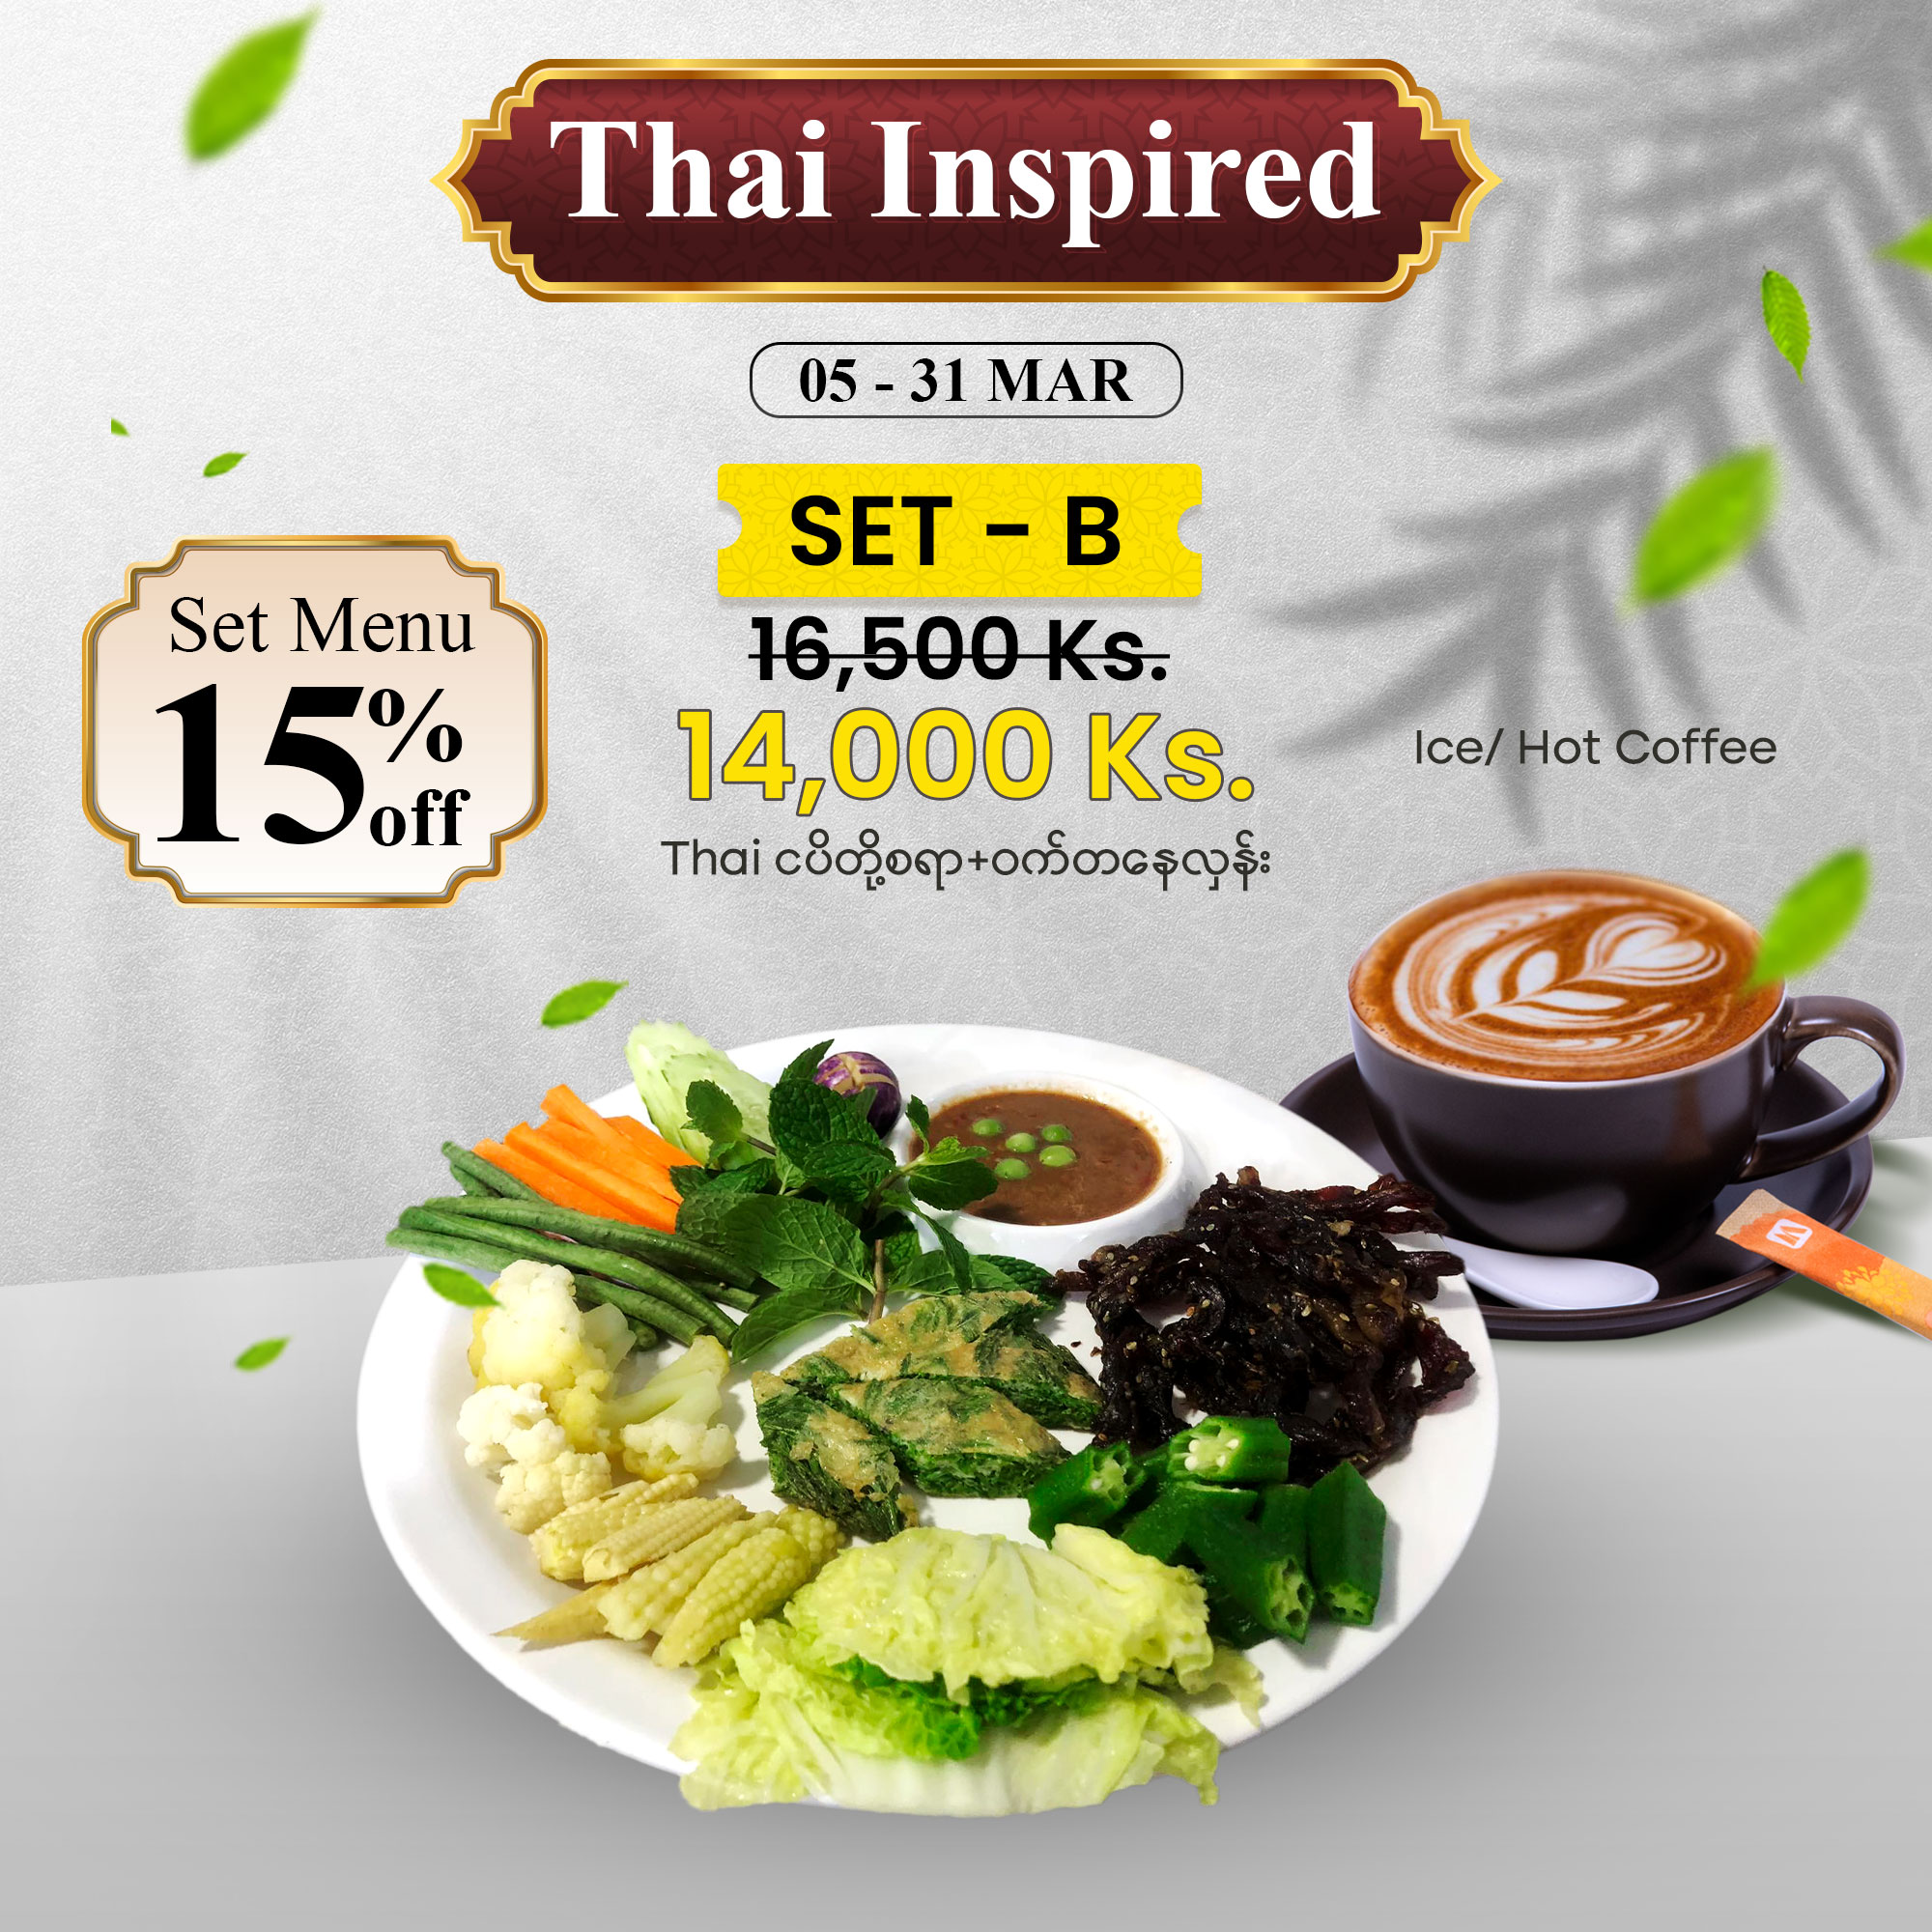 Thai Inspired